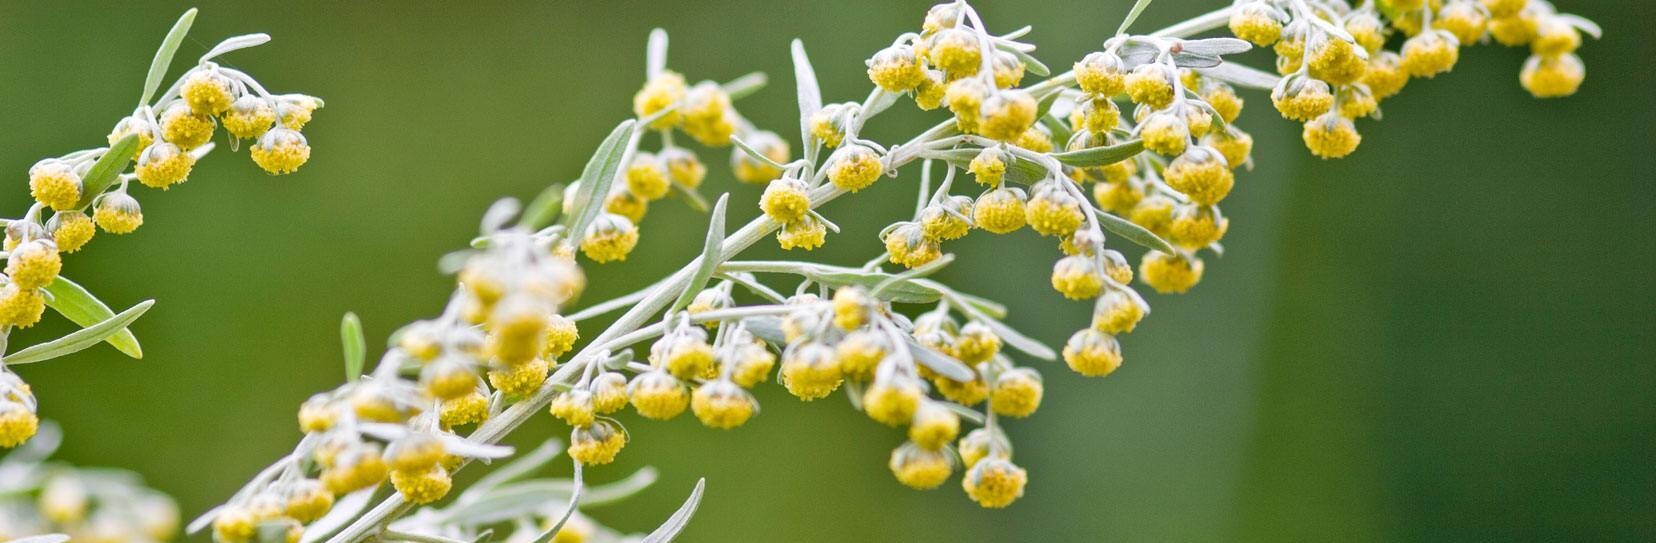 Wermut - Artemisia absinthium